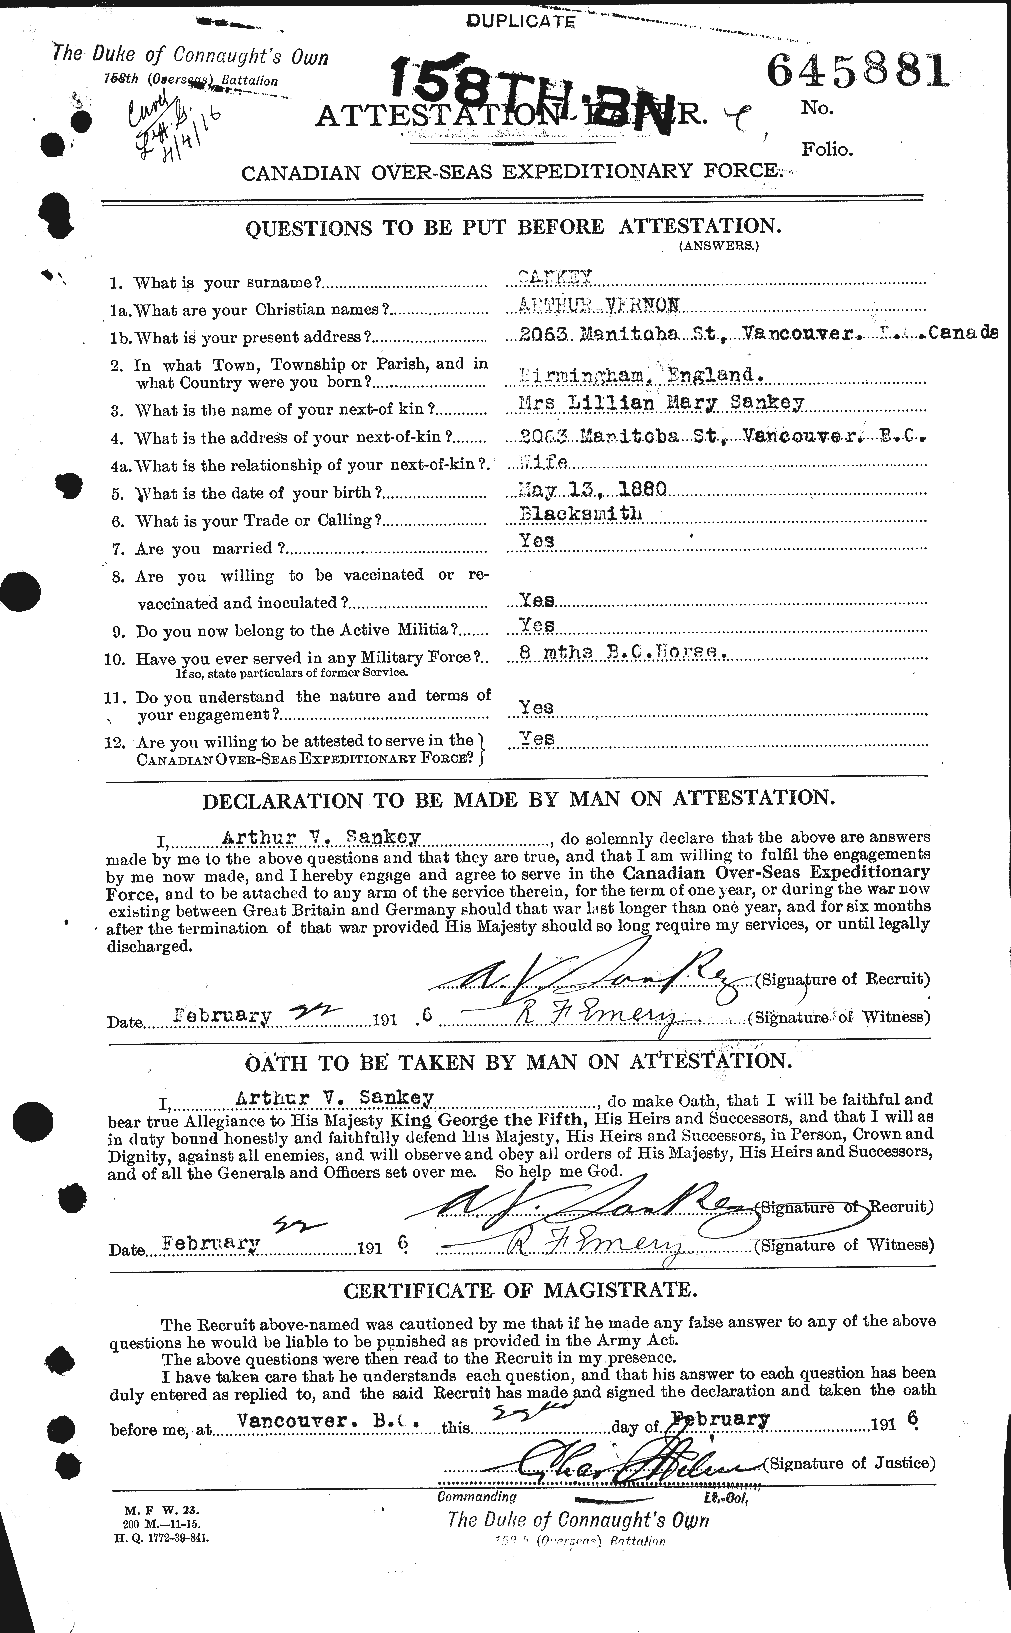 Dossiers du Personnel de la Première Guerre mondiale - CEC 081618a